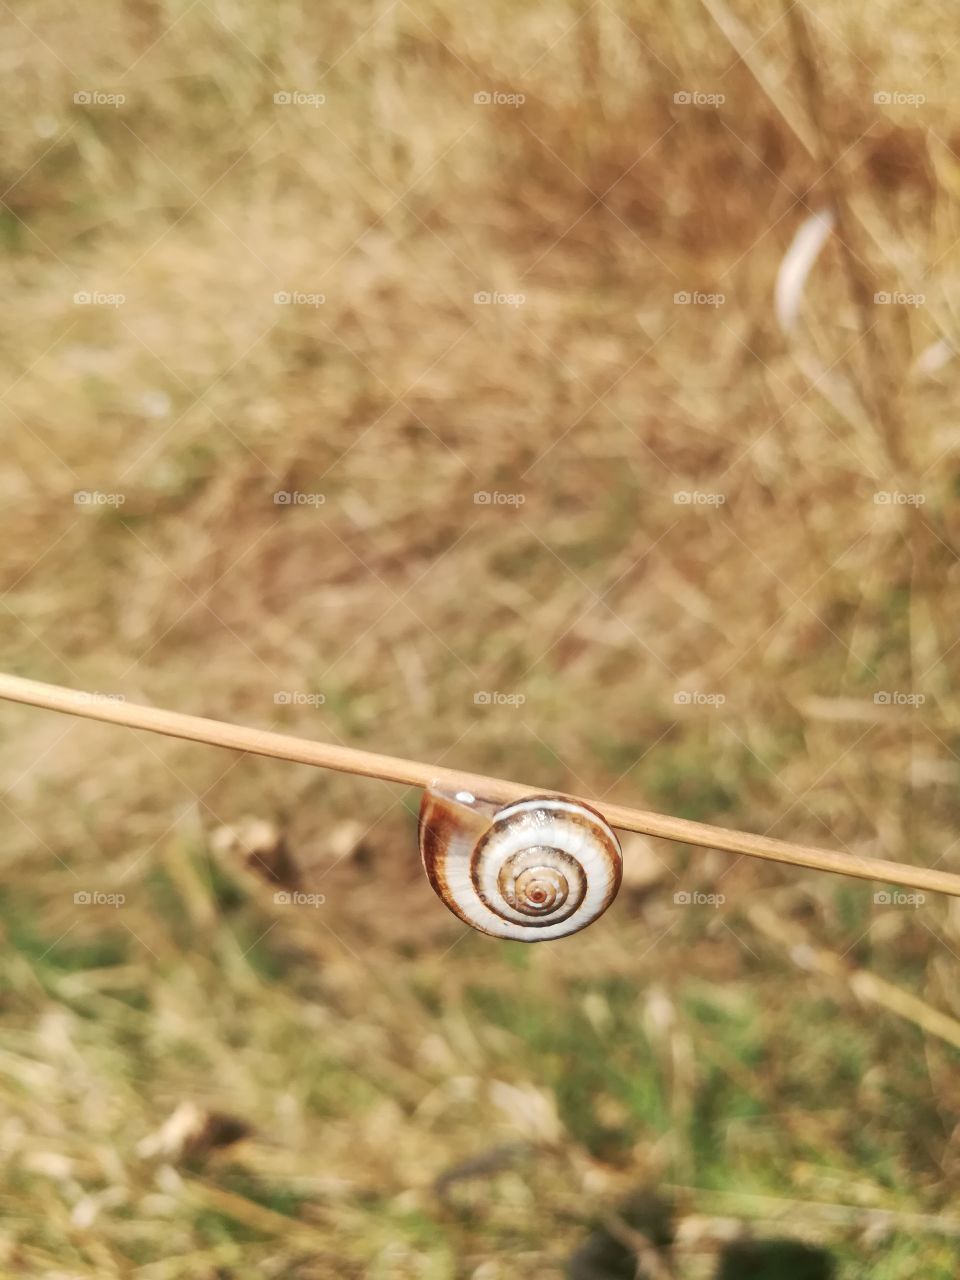 snail :')